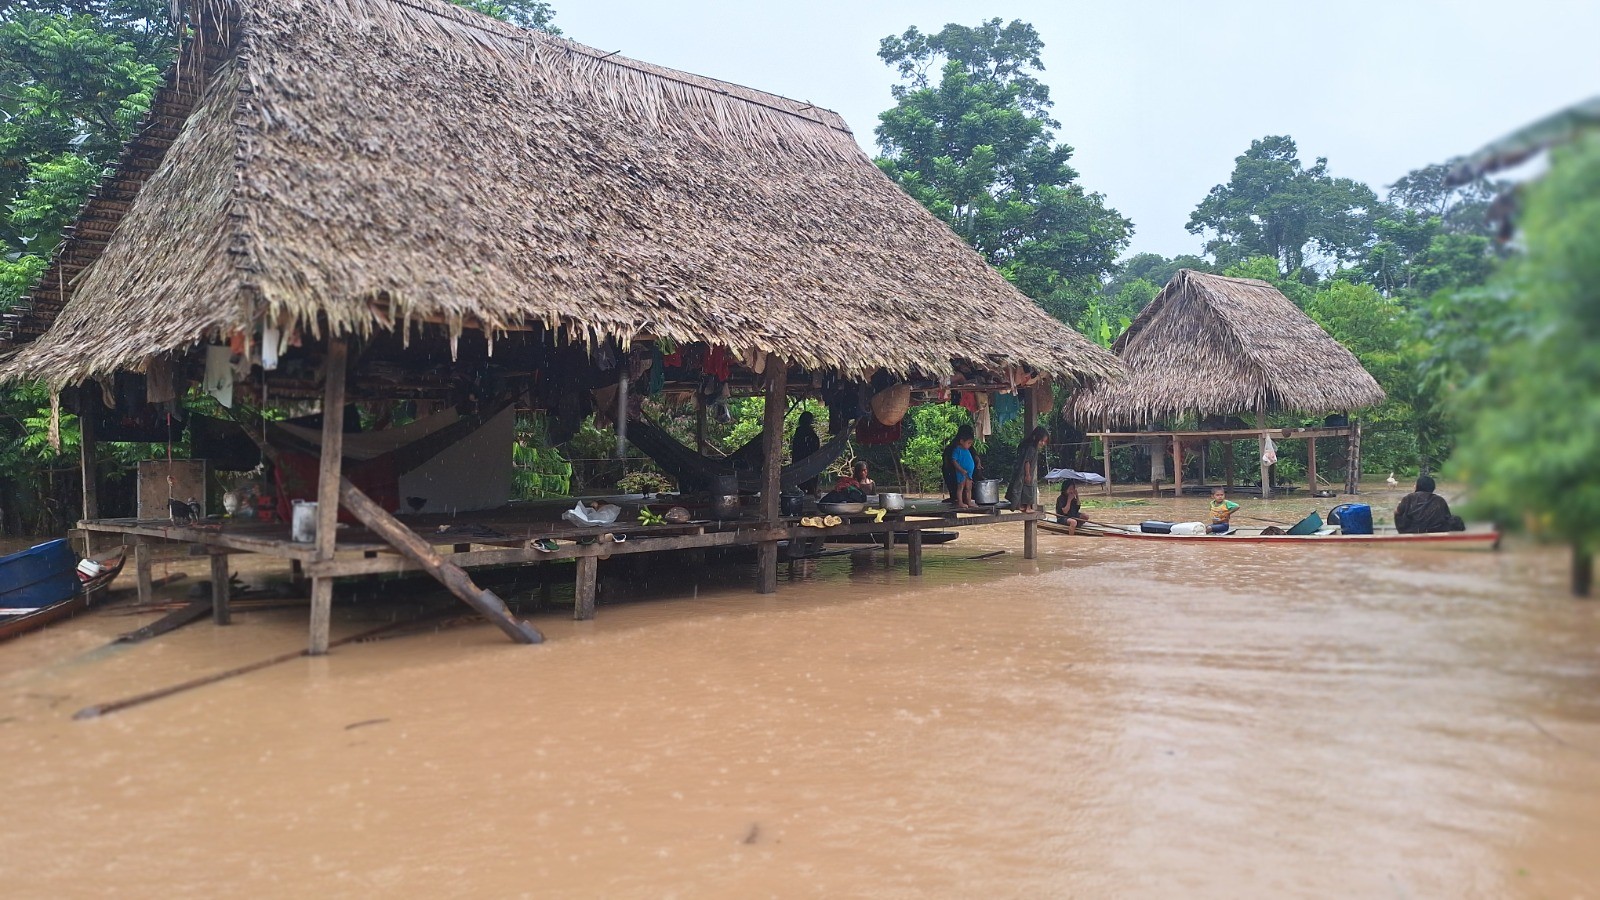 Enchentes atingem mais de 20 comunidades indígenas no Acre, diz governo